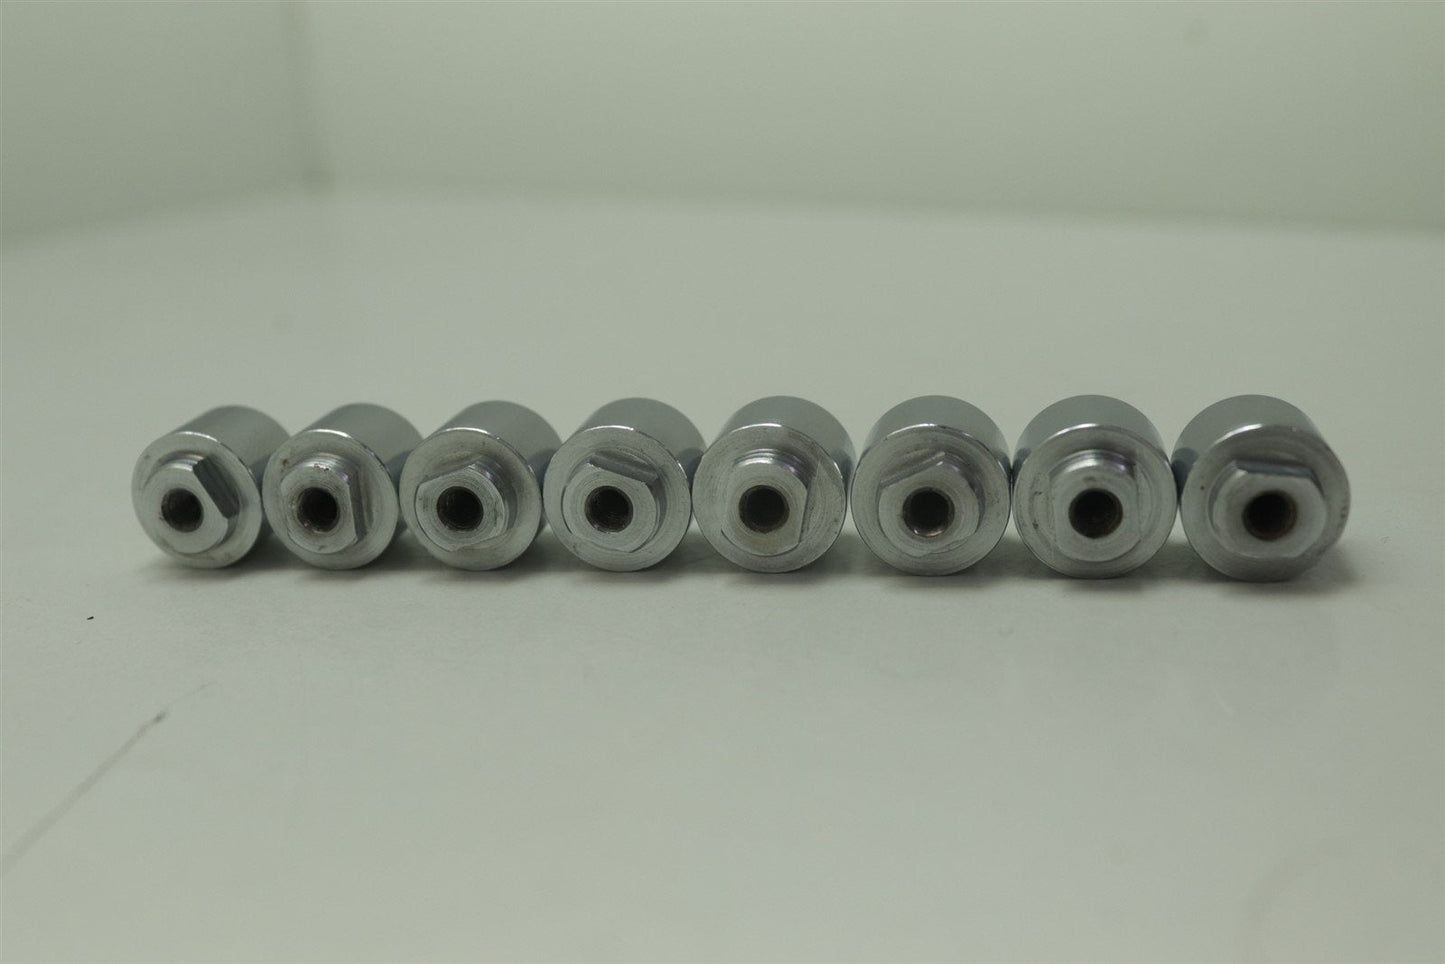 8x Venus Concept Replacement Head Electrodes for OctiPolar, LB1, LB2, SculptFX